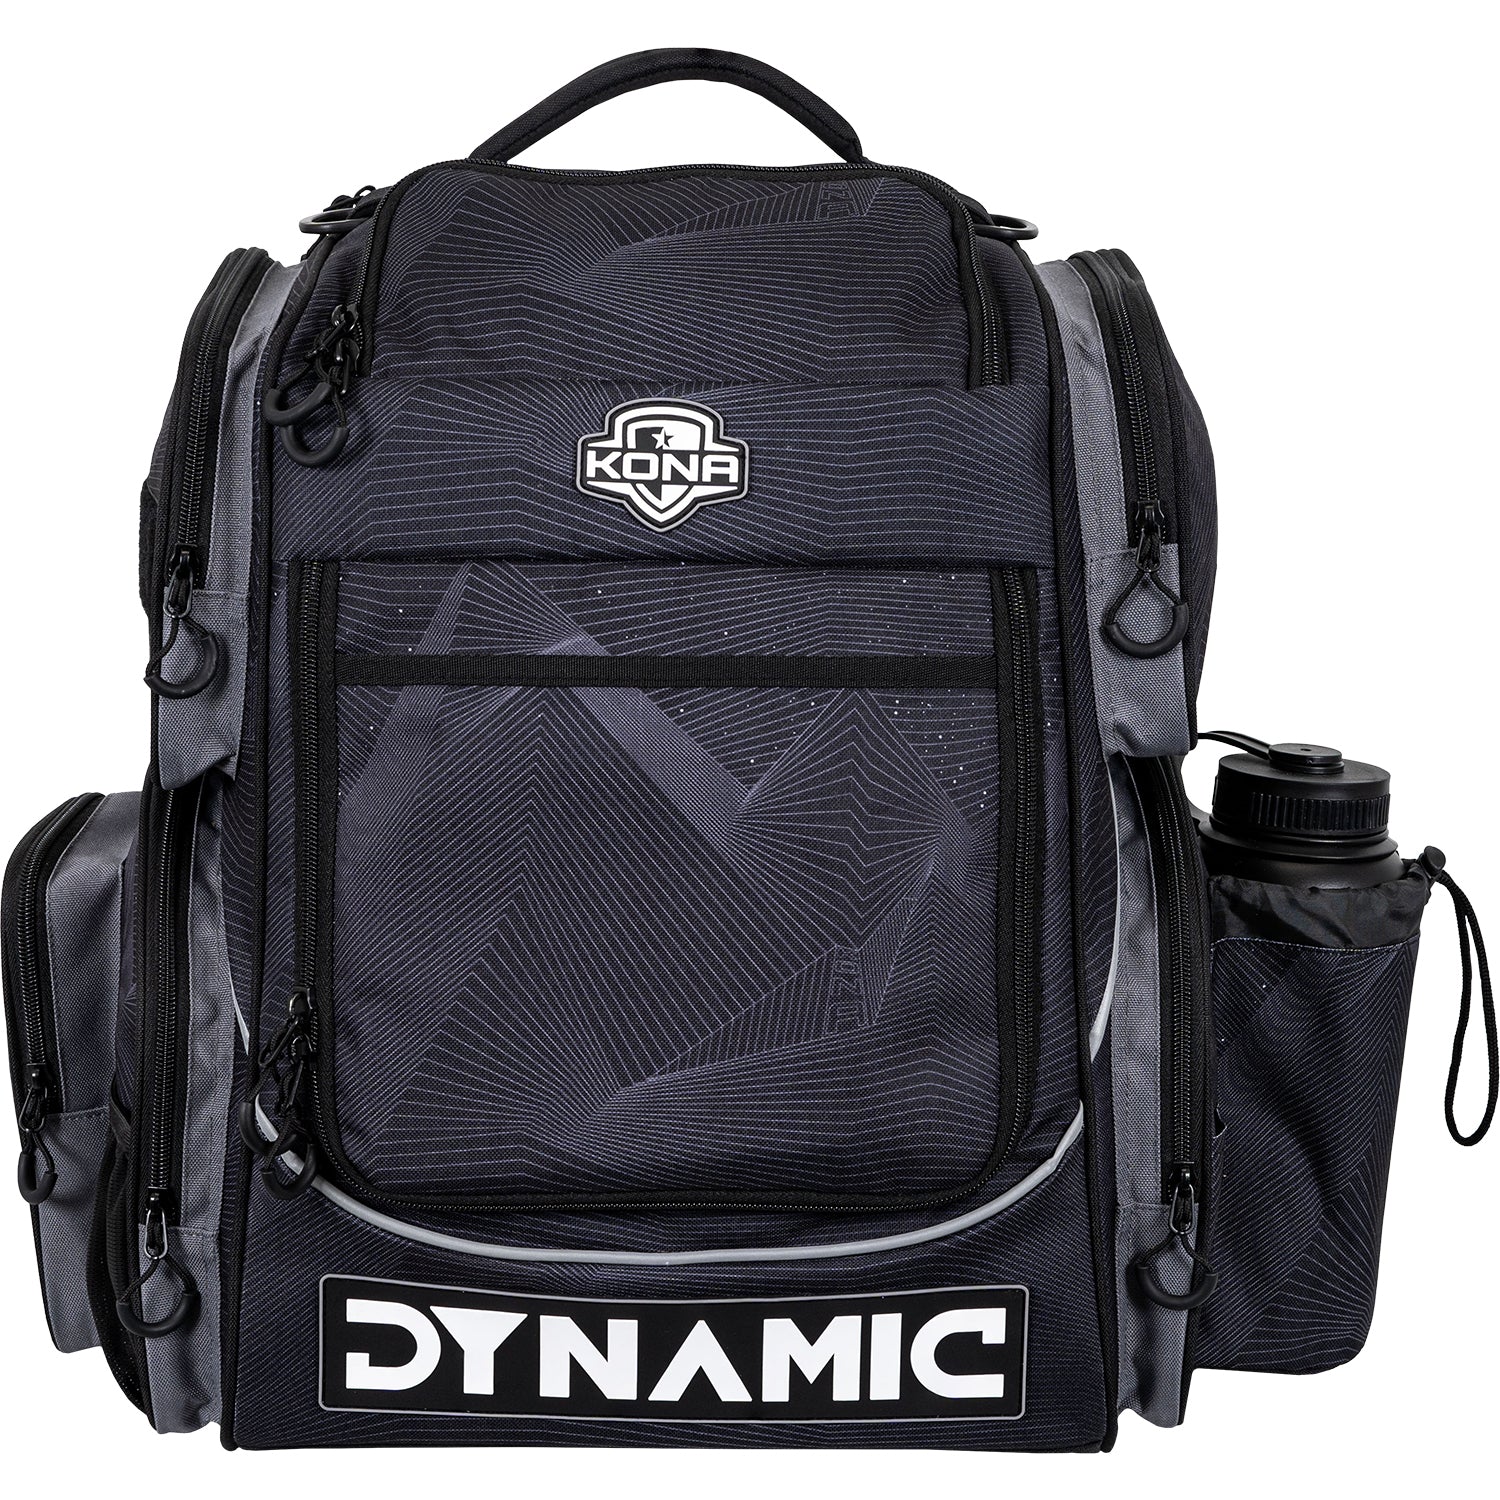 Handeye Supply Co Mission Rig Backpack Kona Panis Team Series – Dynamic  Discs